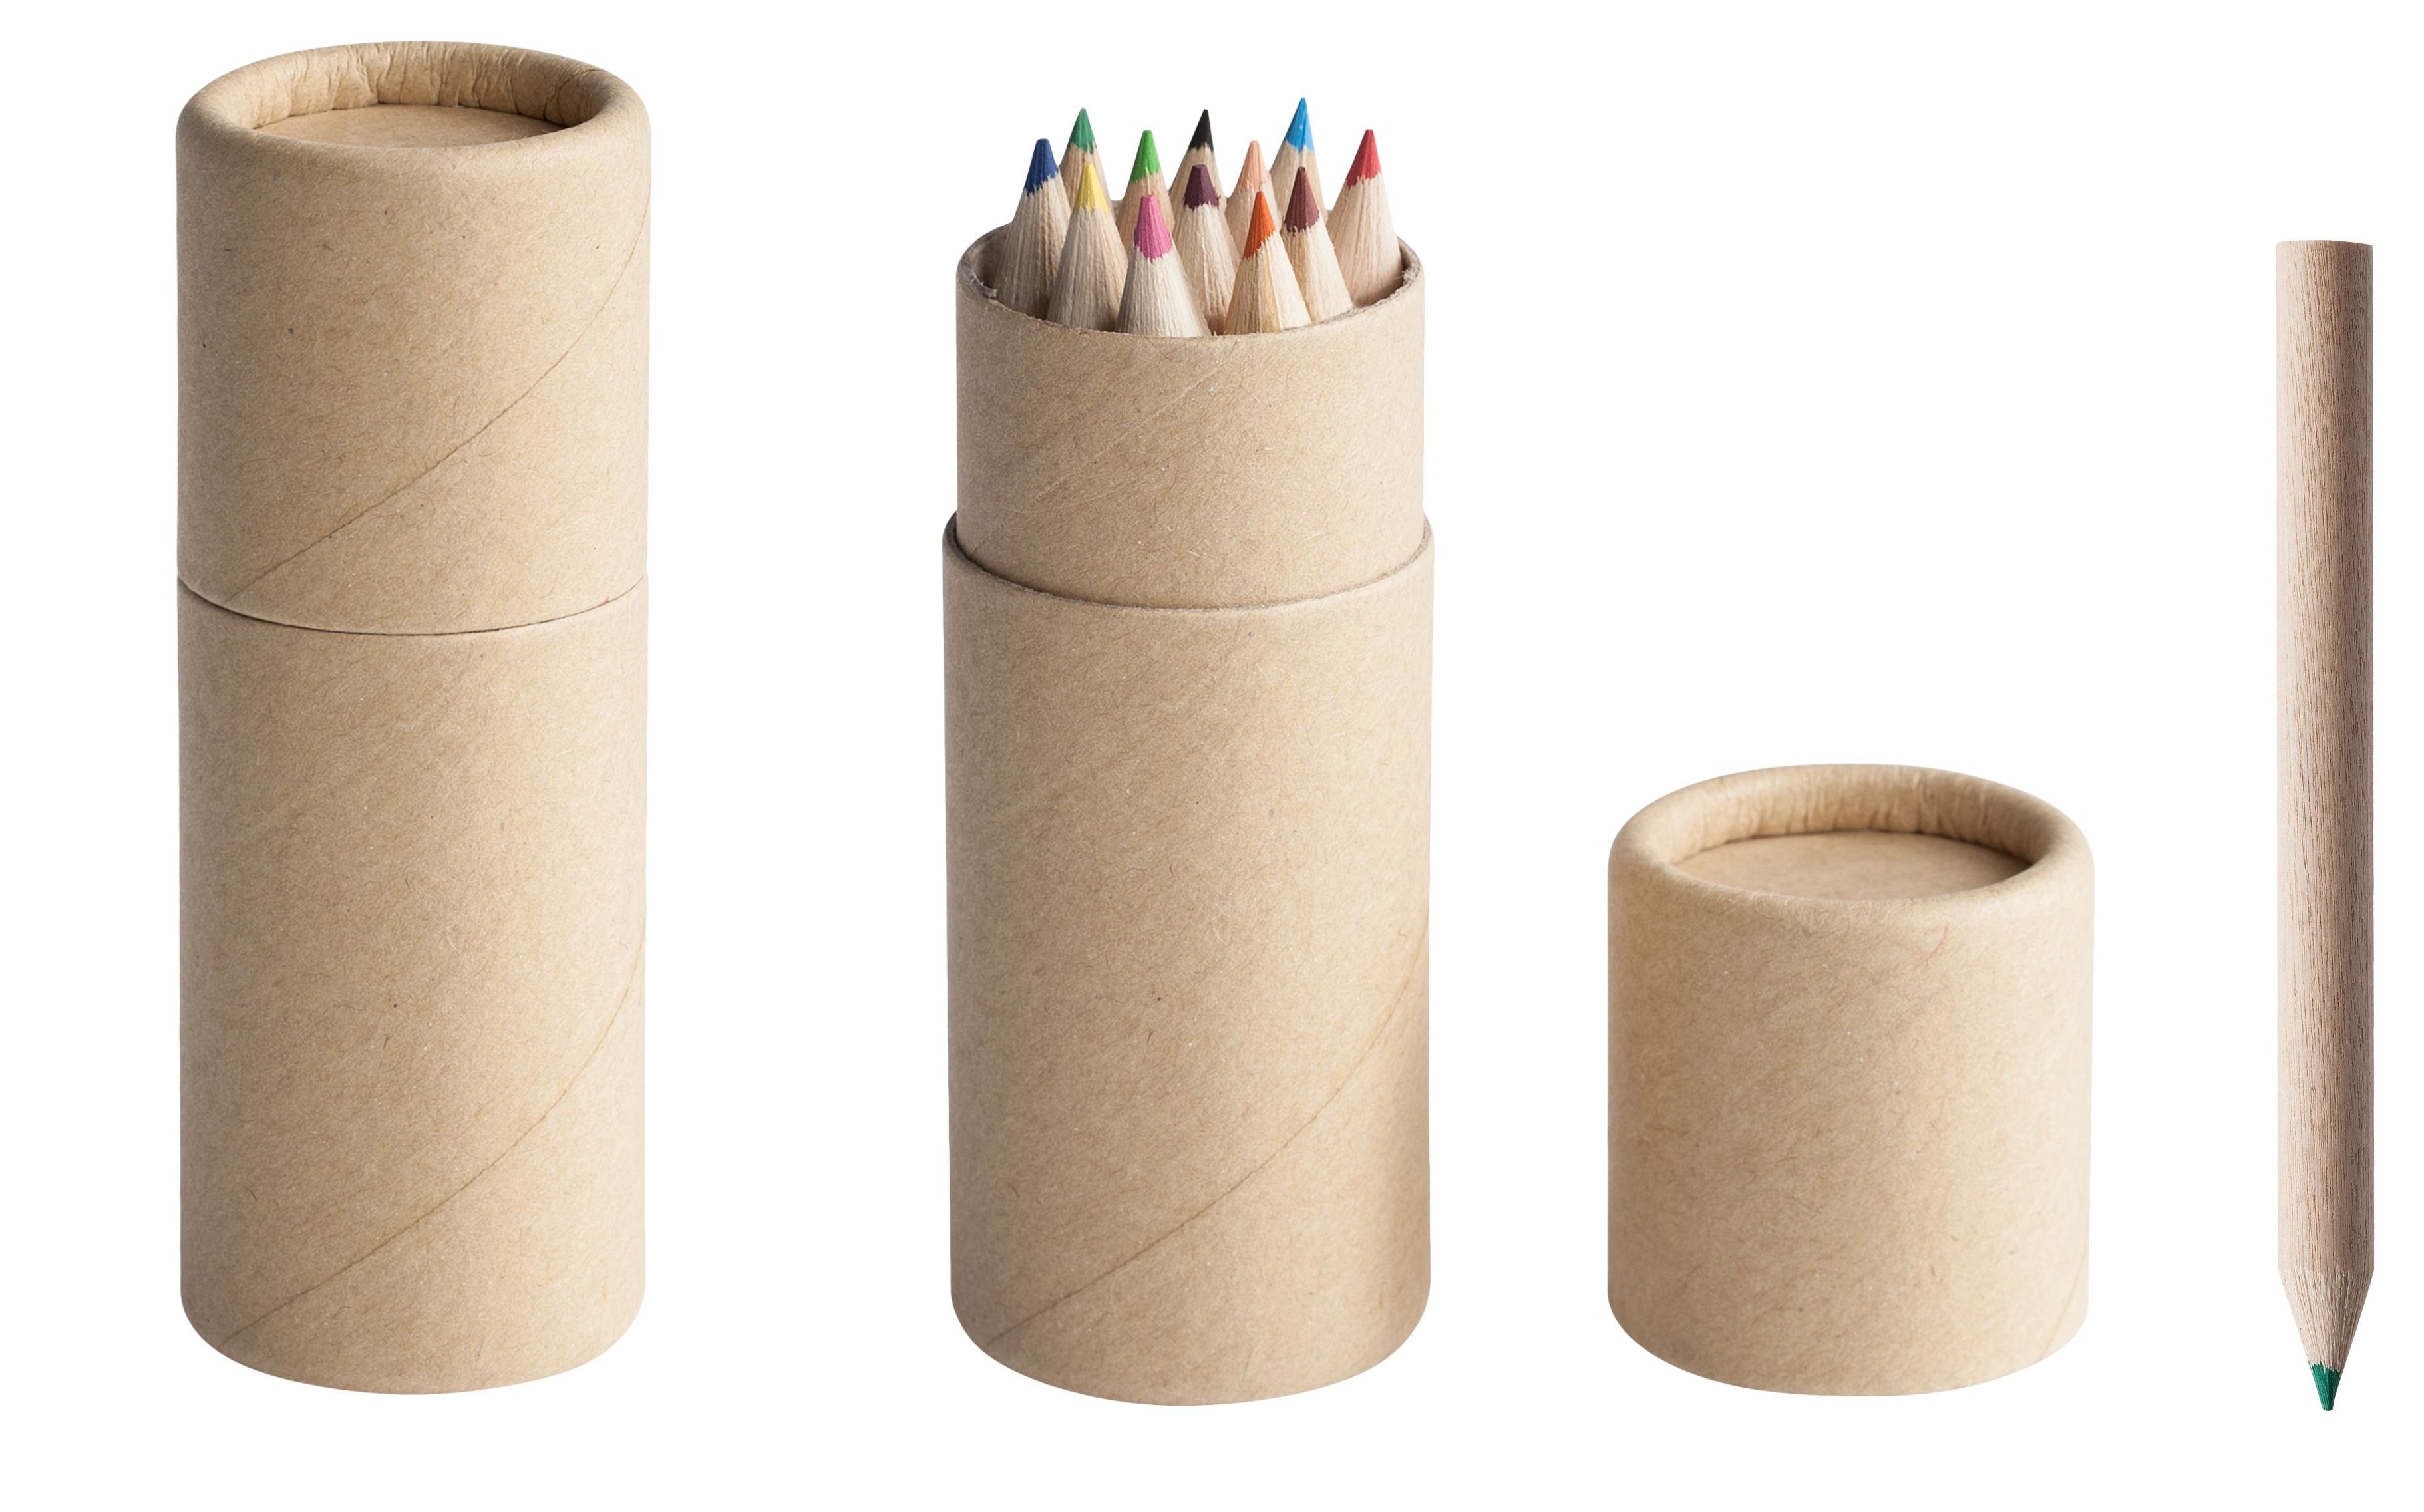 Набор цветных карандашей Pencilvania Tube